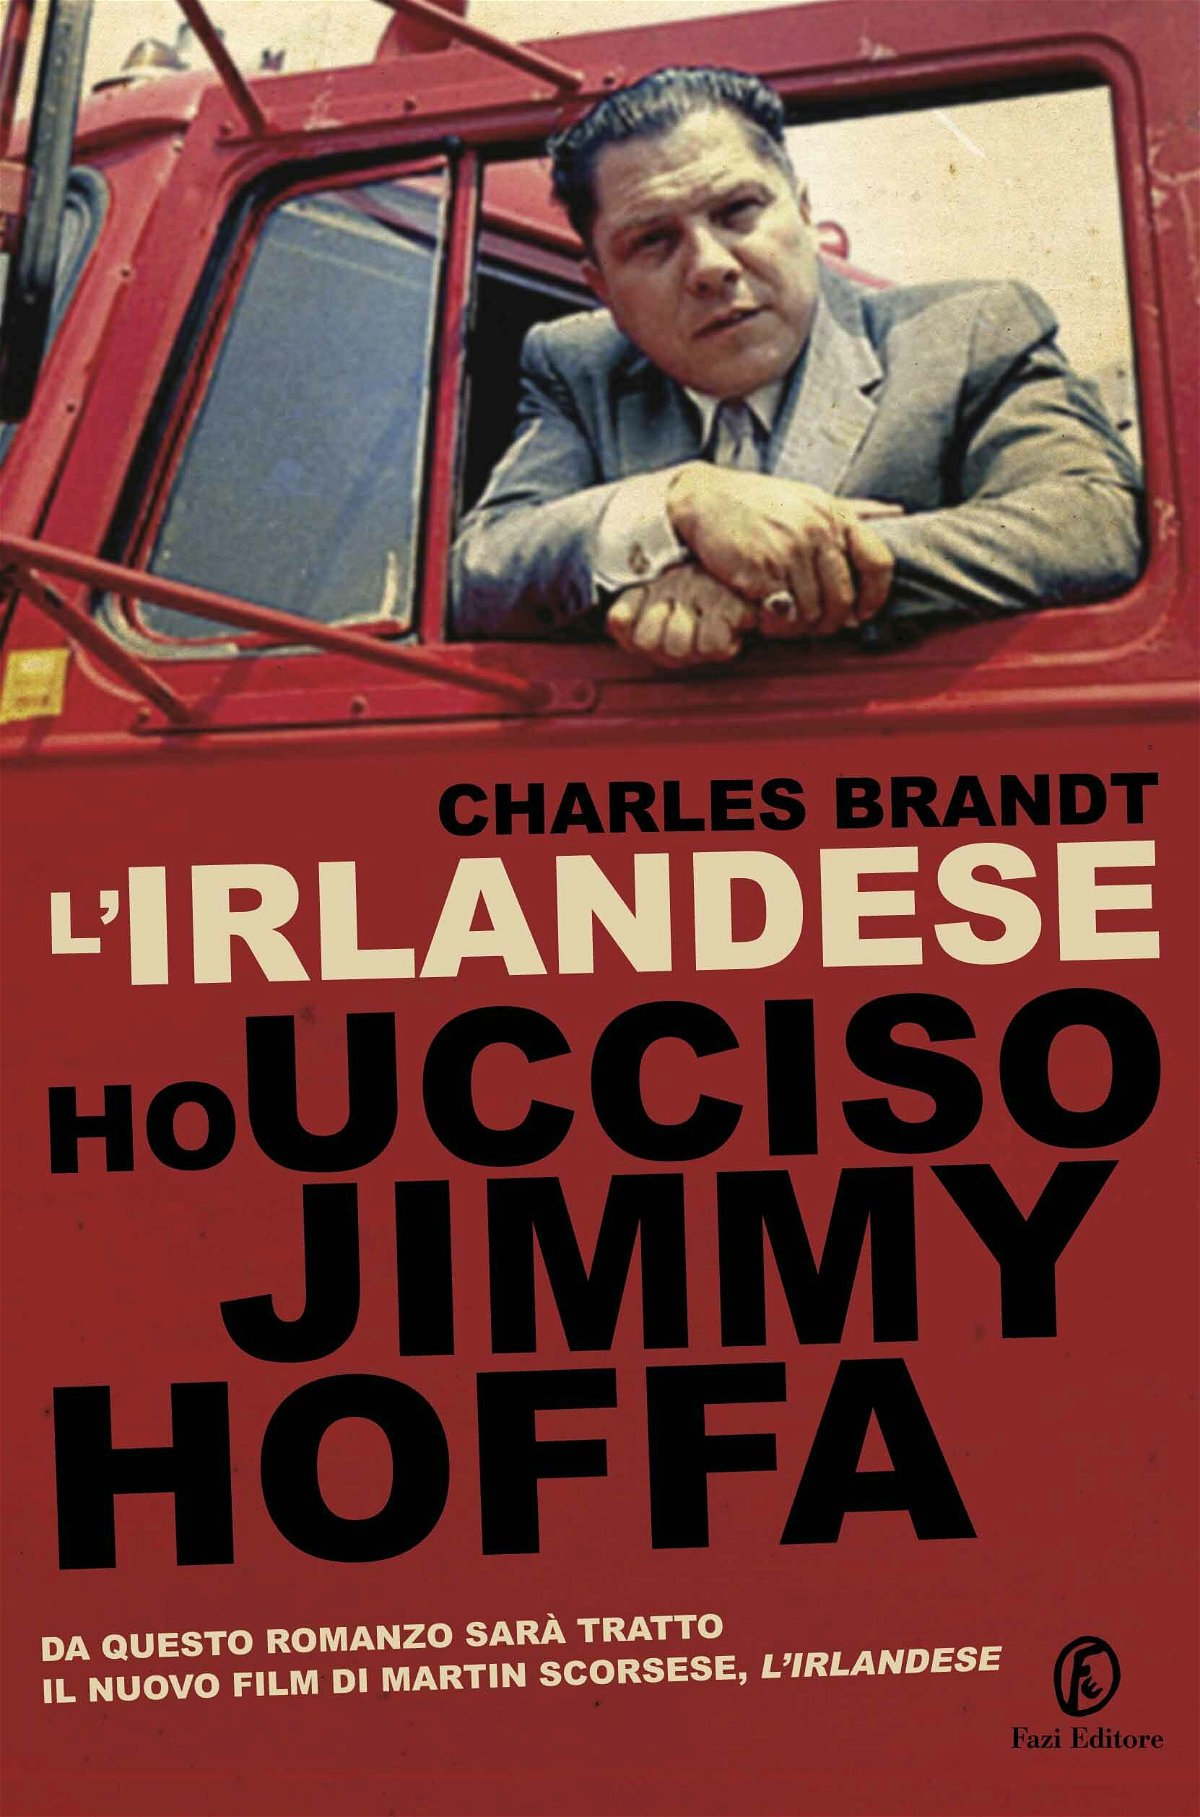 La copertina del libro L'irlandese. Ho ucciso Jimmy Hoffa, da cui è tratto The Irishman, il nuovo film di Martin Scorsese